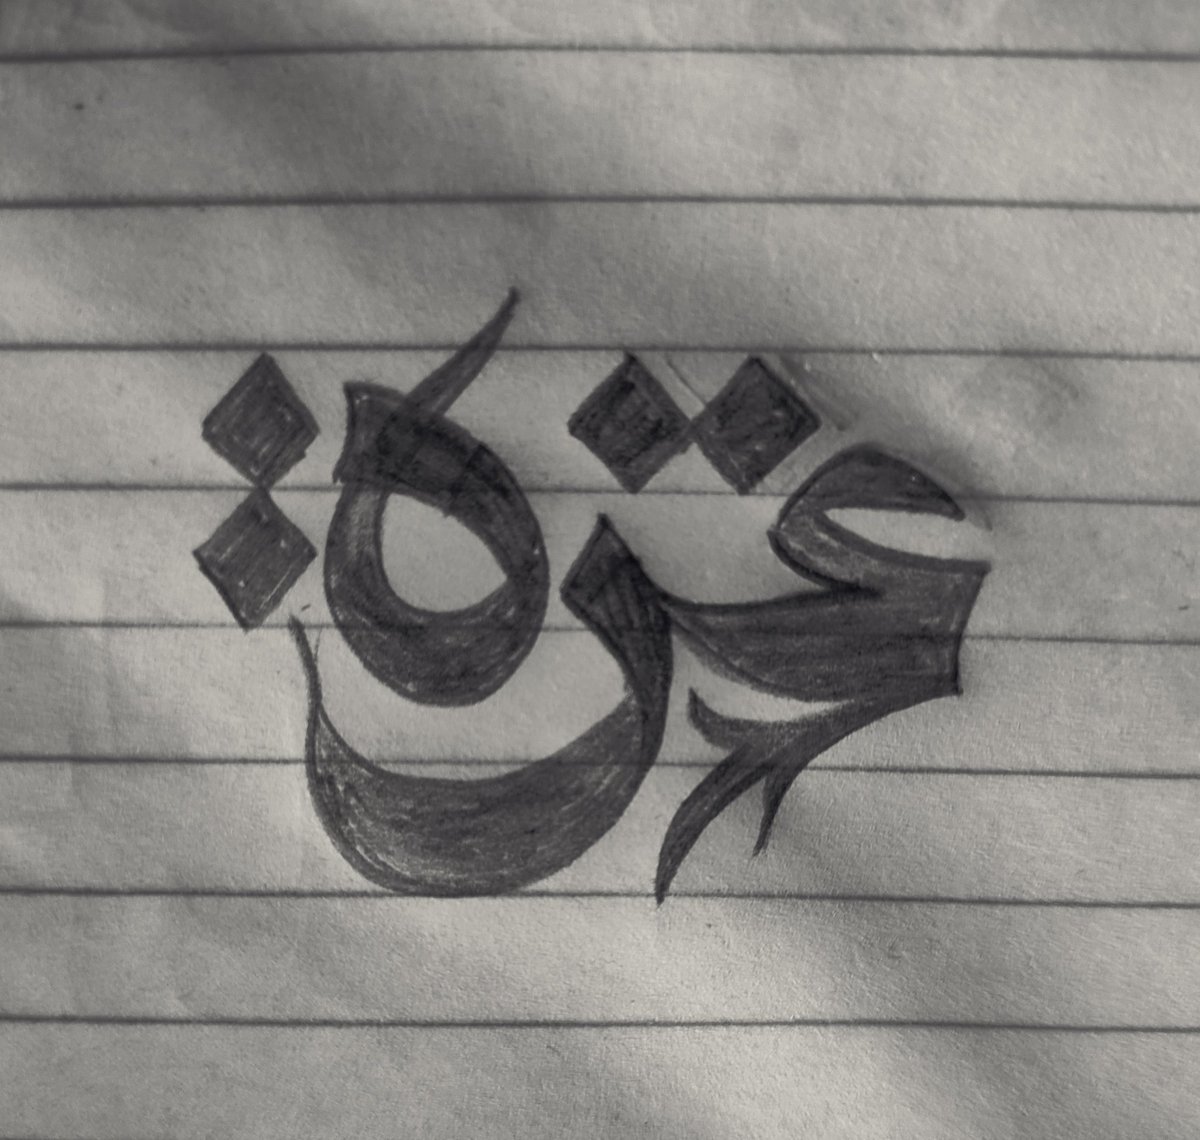 غزّة العِزّة 💚✌️
.
.
.
.
.
#typography #lettering #logo #type  #calligraphy #handlettering #graphicdesigner #typography #calligraphy #arabicart #islamicart #arabic_design #procreate #arabic_typo #arabic_typography #غزة #الأقصى #طوفان_الأقصى